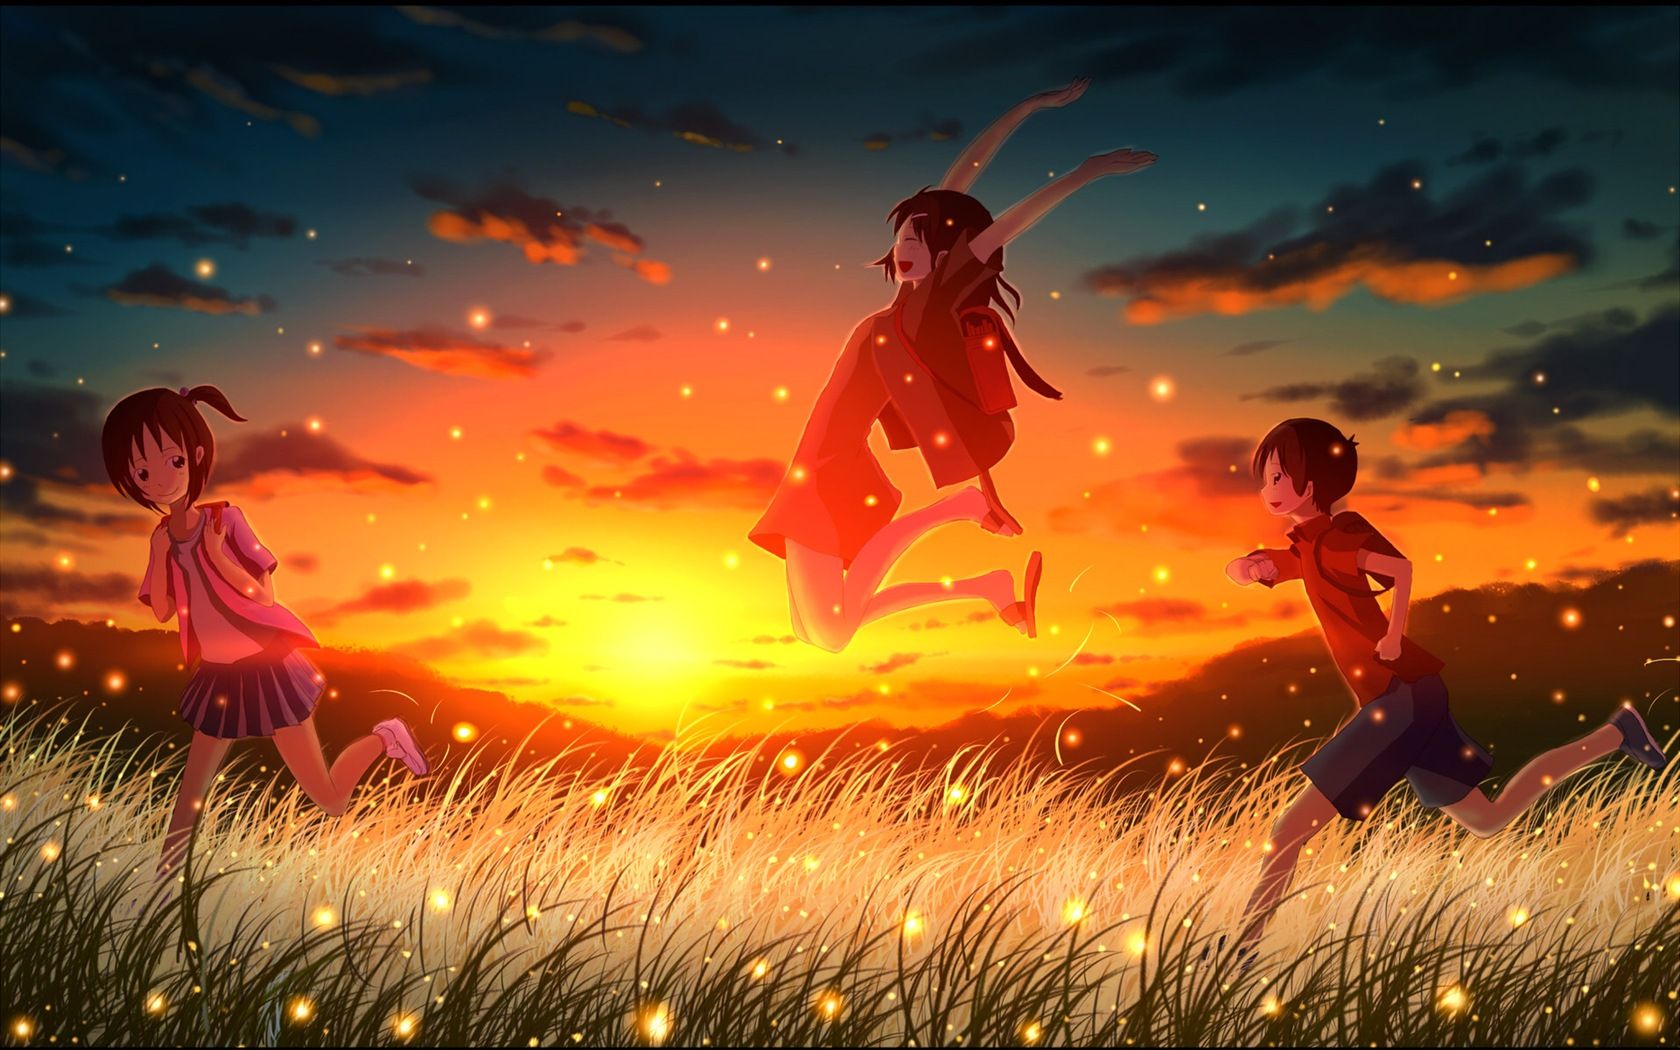 Firefly Summer beautiful anime wallpaper Wallpaper